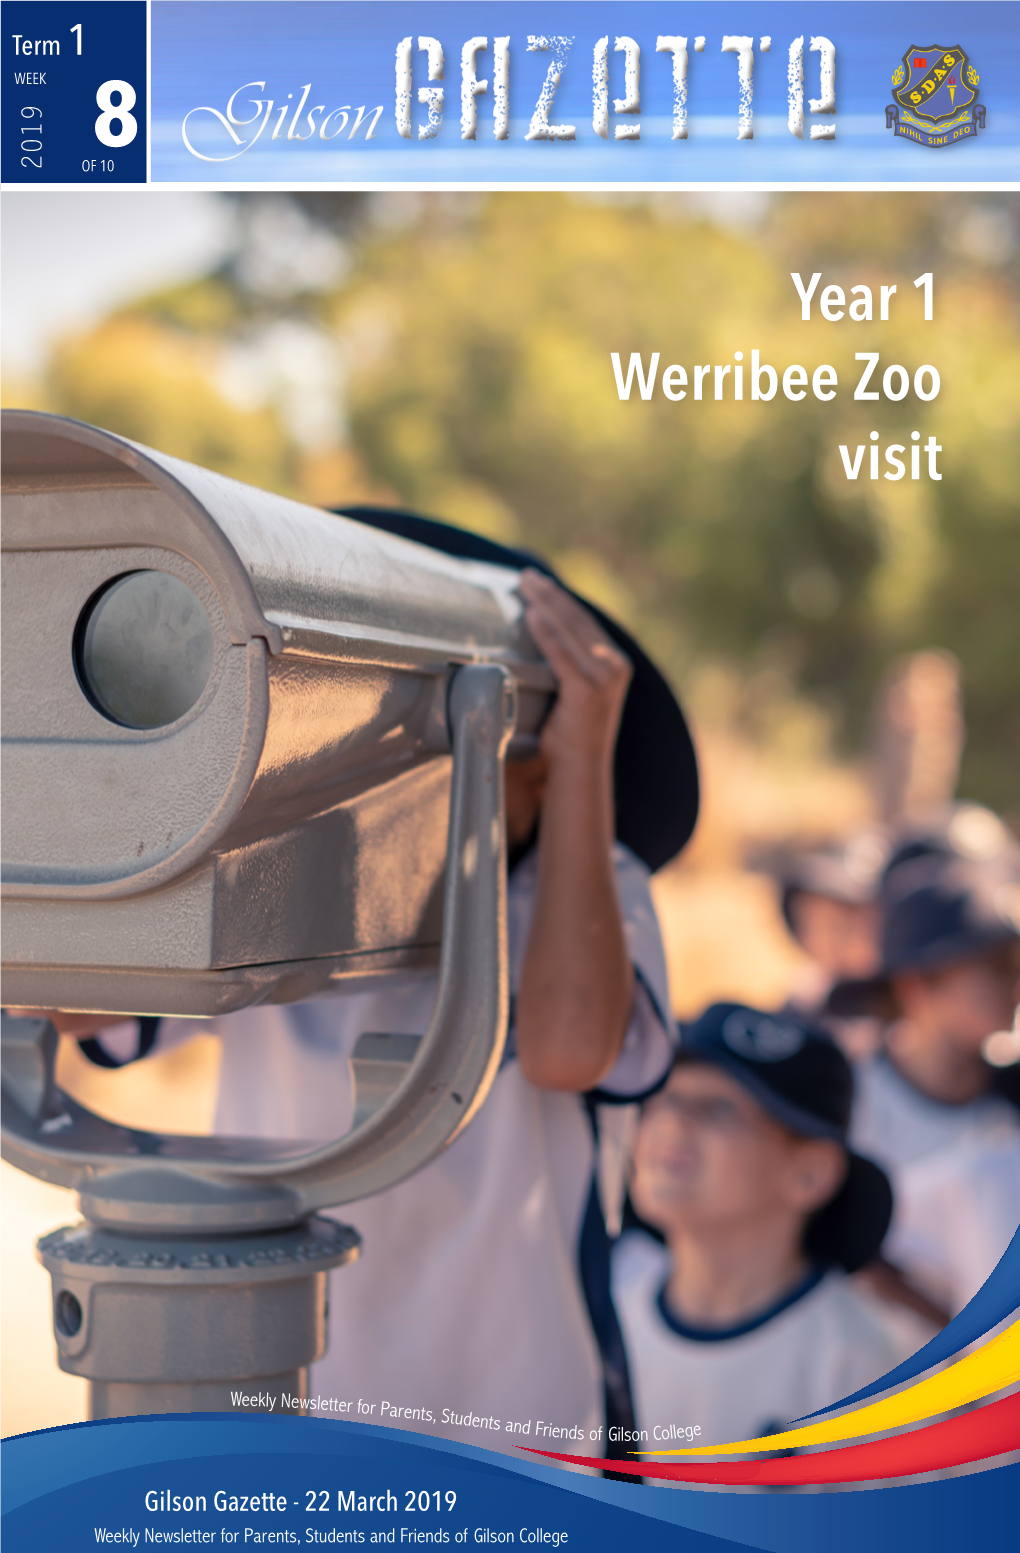 Year 1 Werribee Zoo Visit